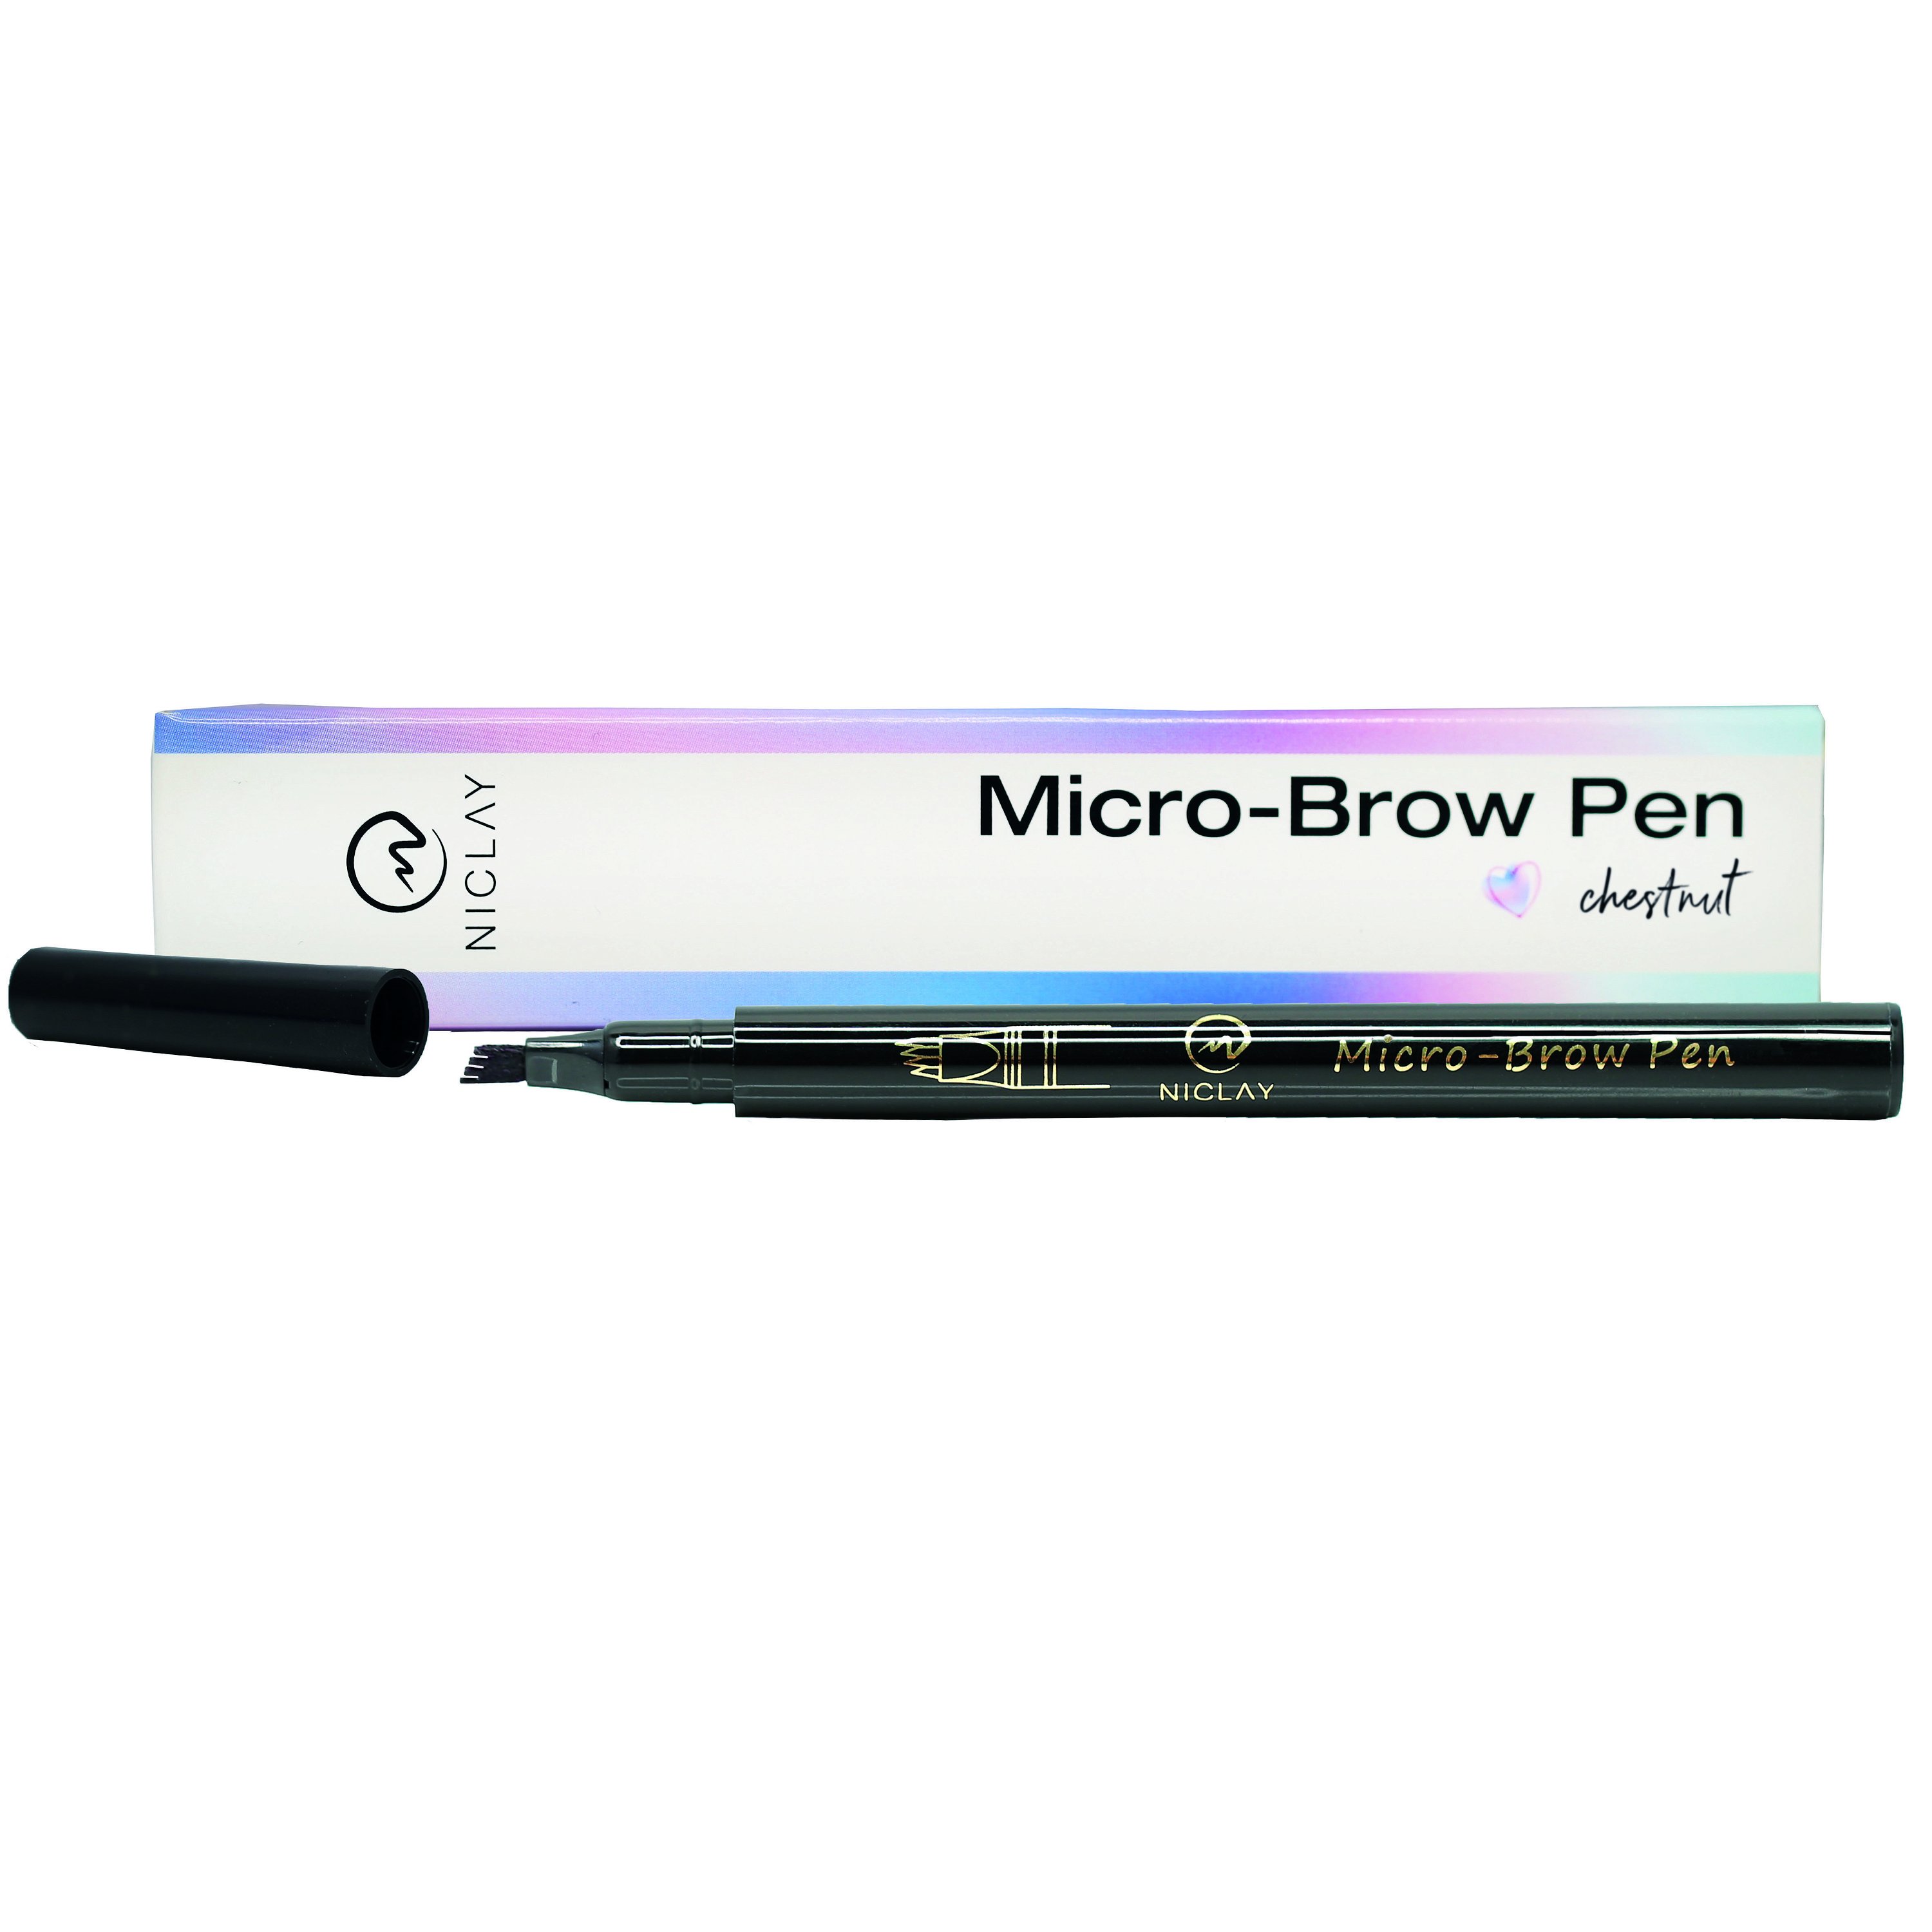 Micro-Brow Pen